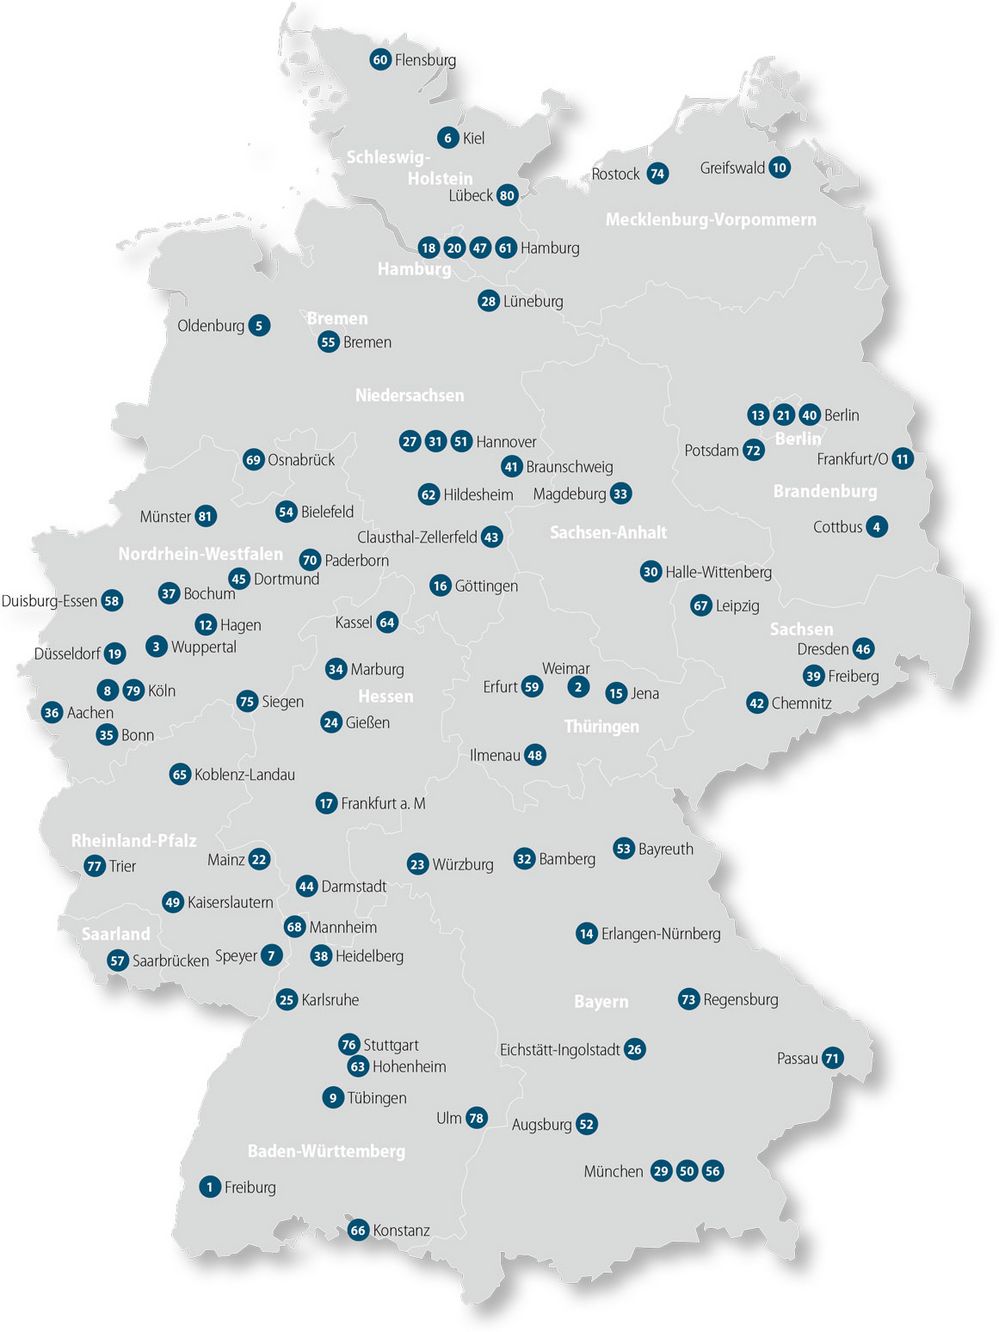 Die Deutschlandskarte zeigt zusammen mit den Nummern der Aufzählung, wo die jeweiligen Mitgliedsuniversitäten in Deutschland zu finden sind.